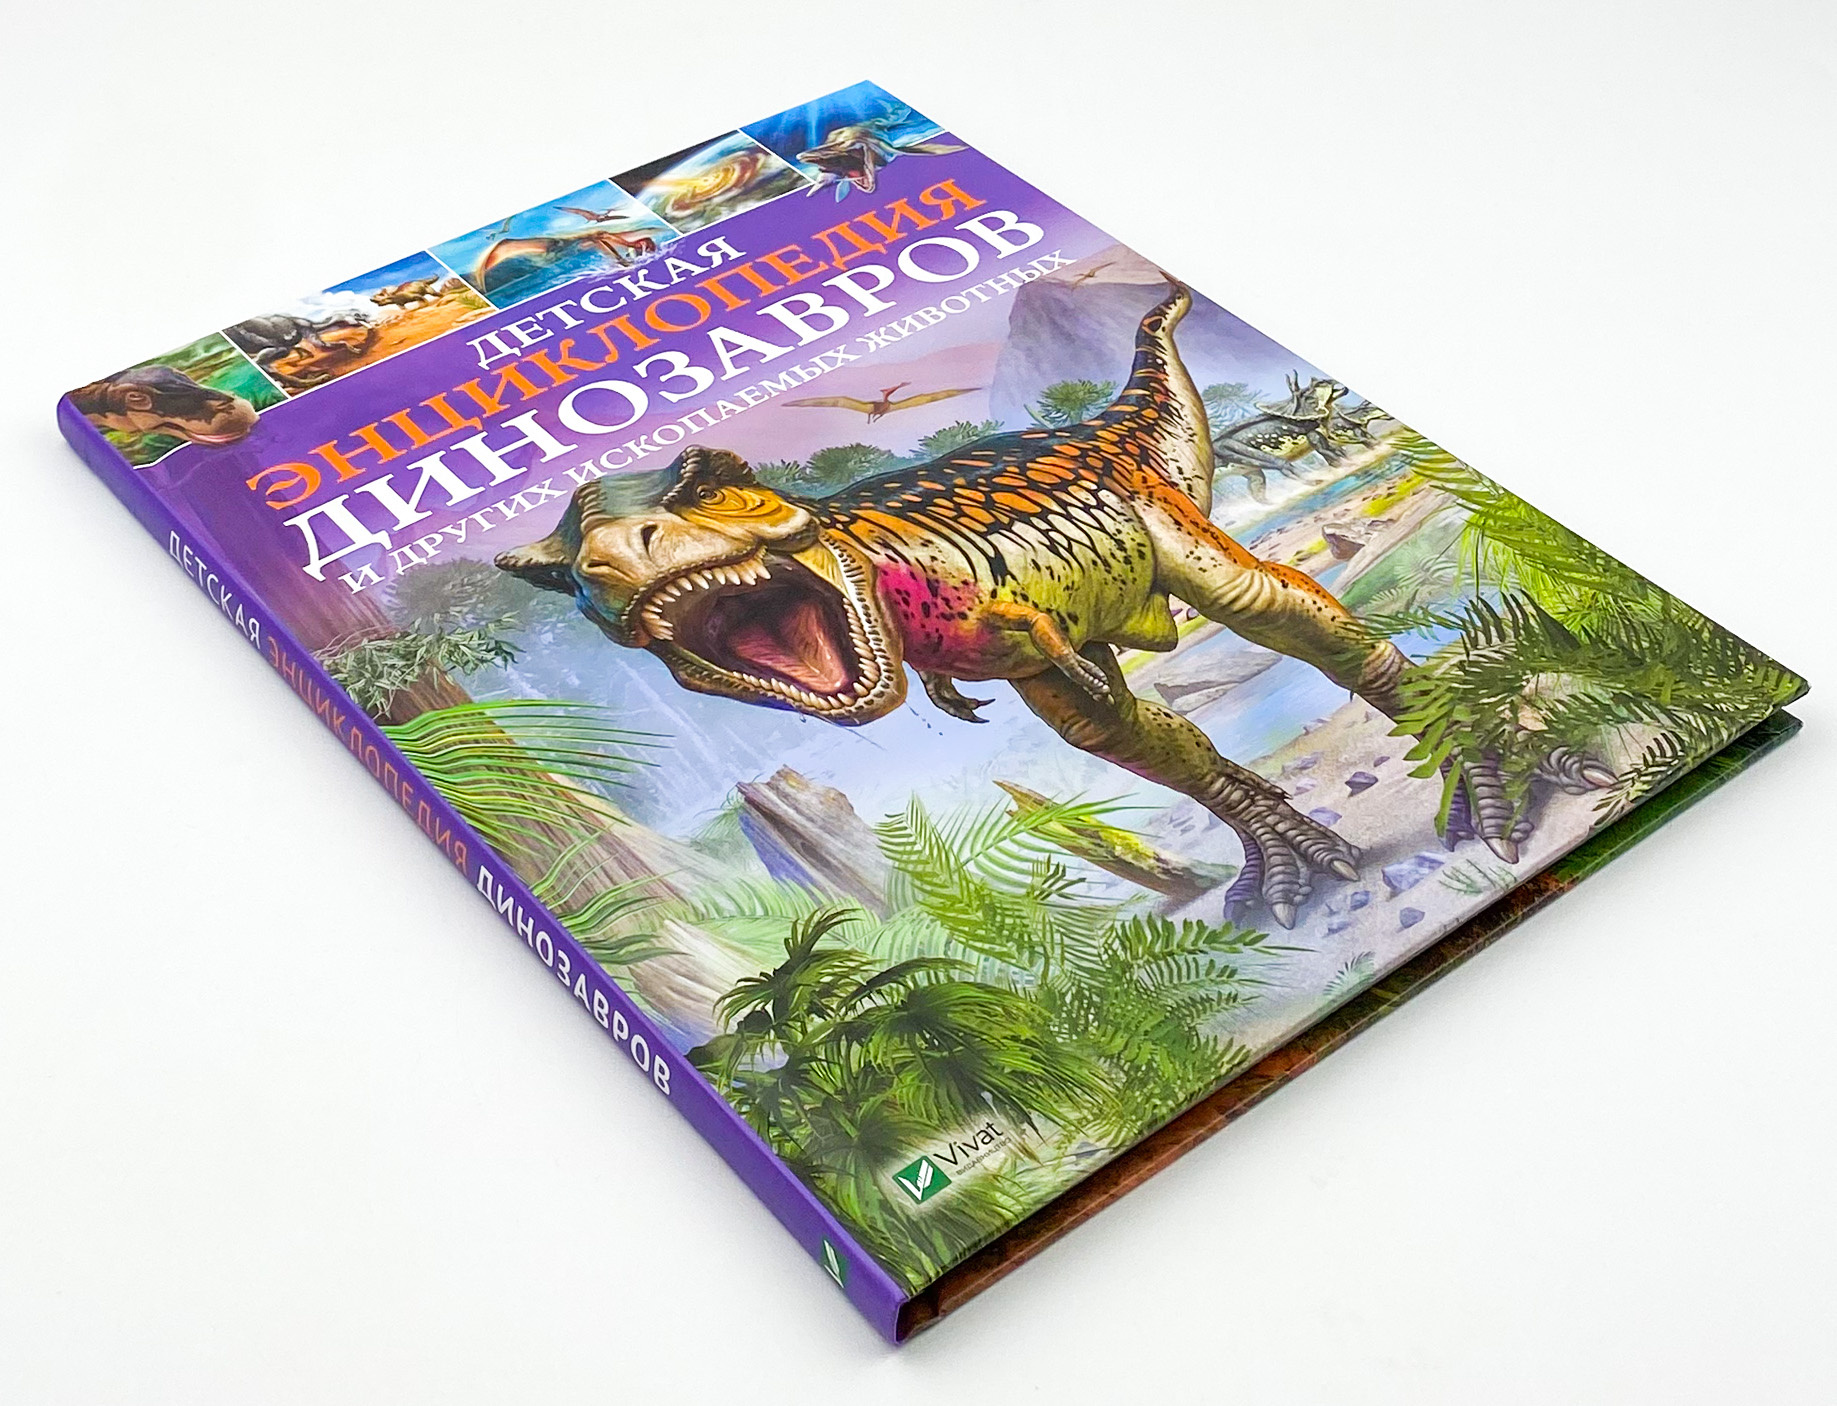 Детская энциклопедия динозавров и других ископаемых животных. Автор — Клер Гібберт. 